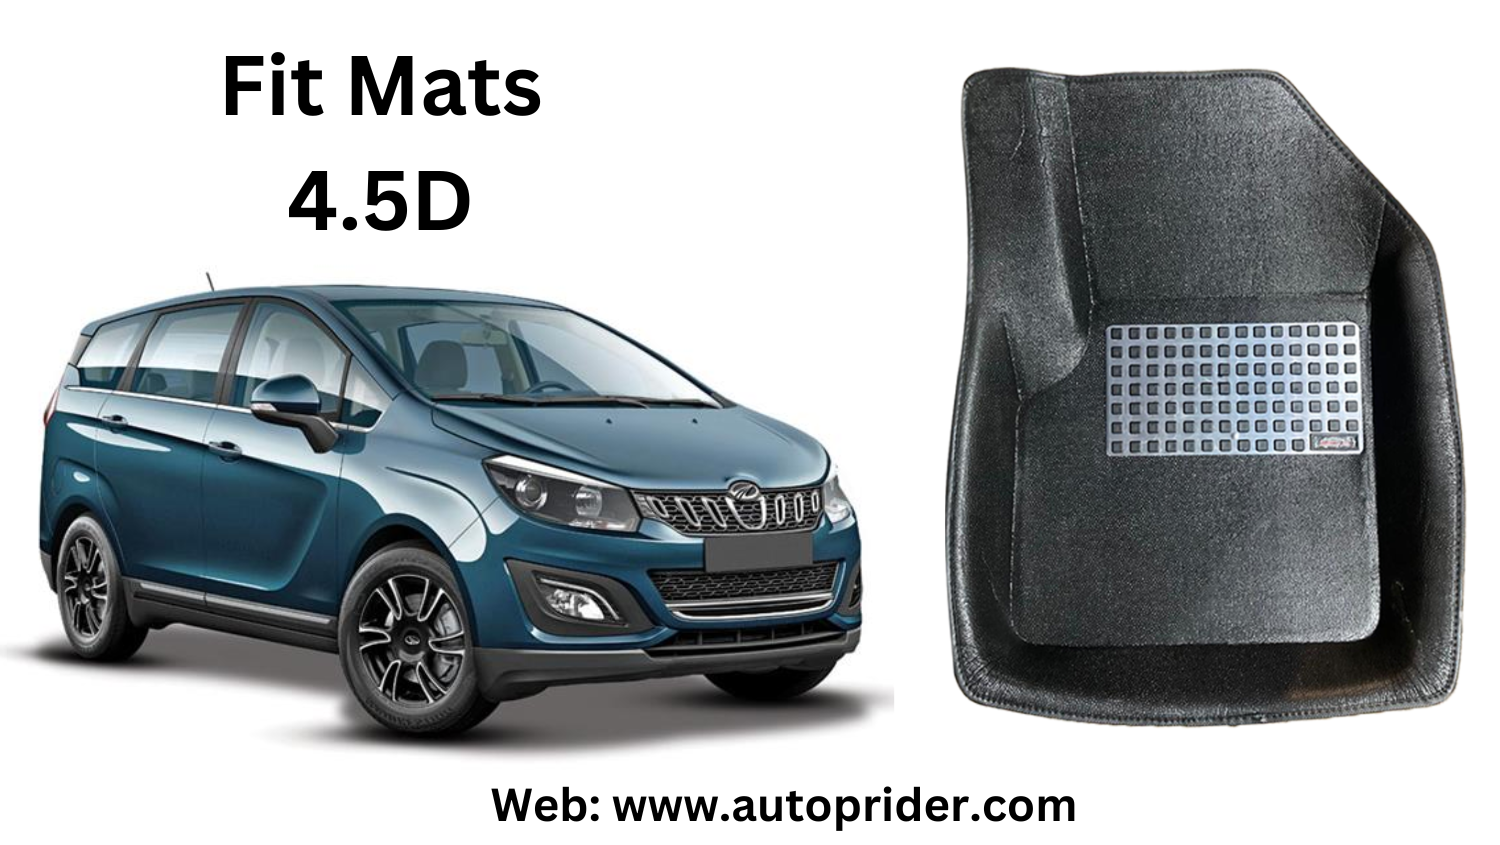 Autoprider | Fit Mats 4.5D Economy Car Mats for Mahindra Marazzo